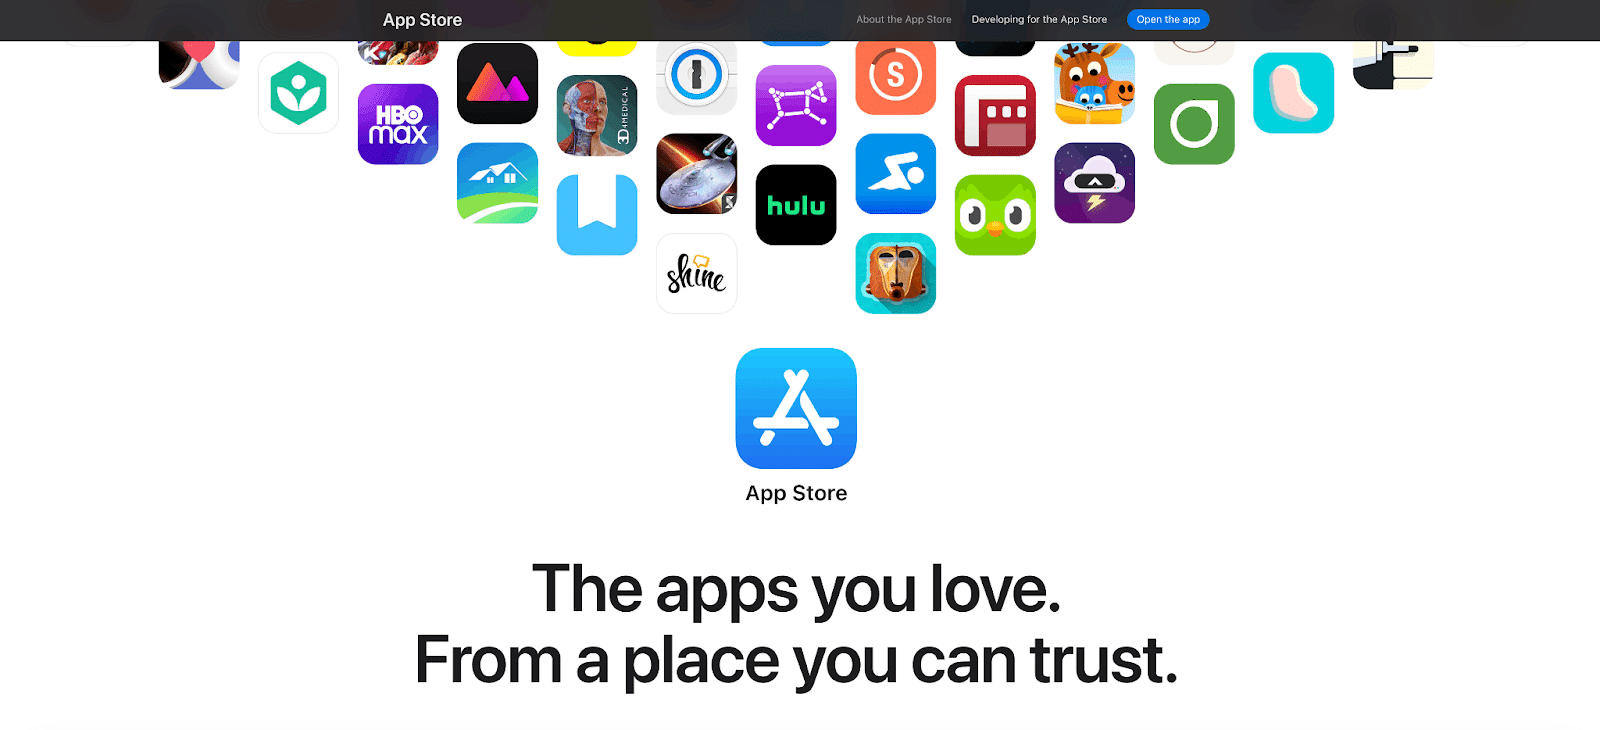 Der App Store